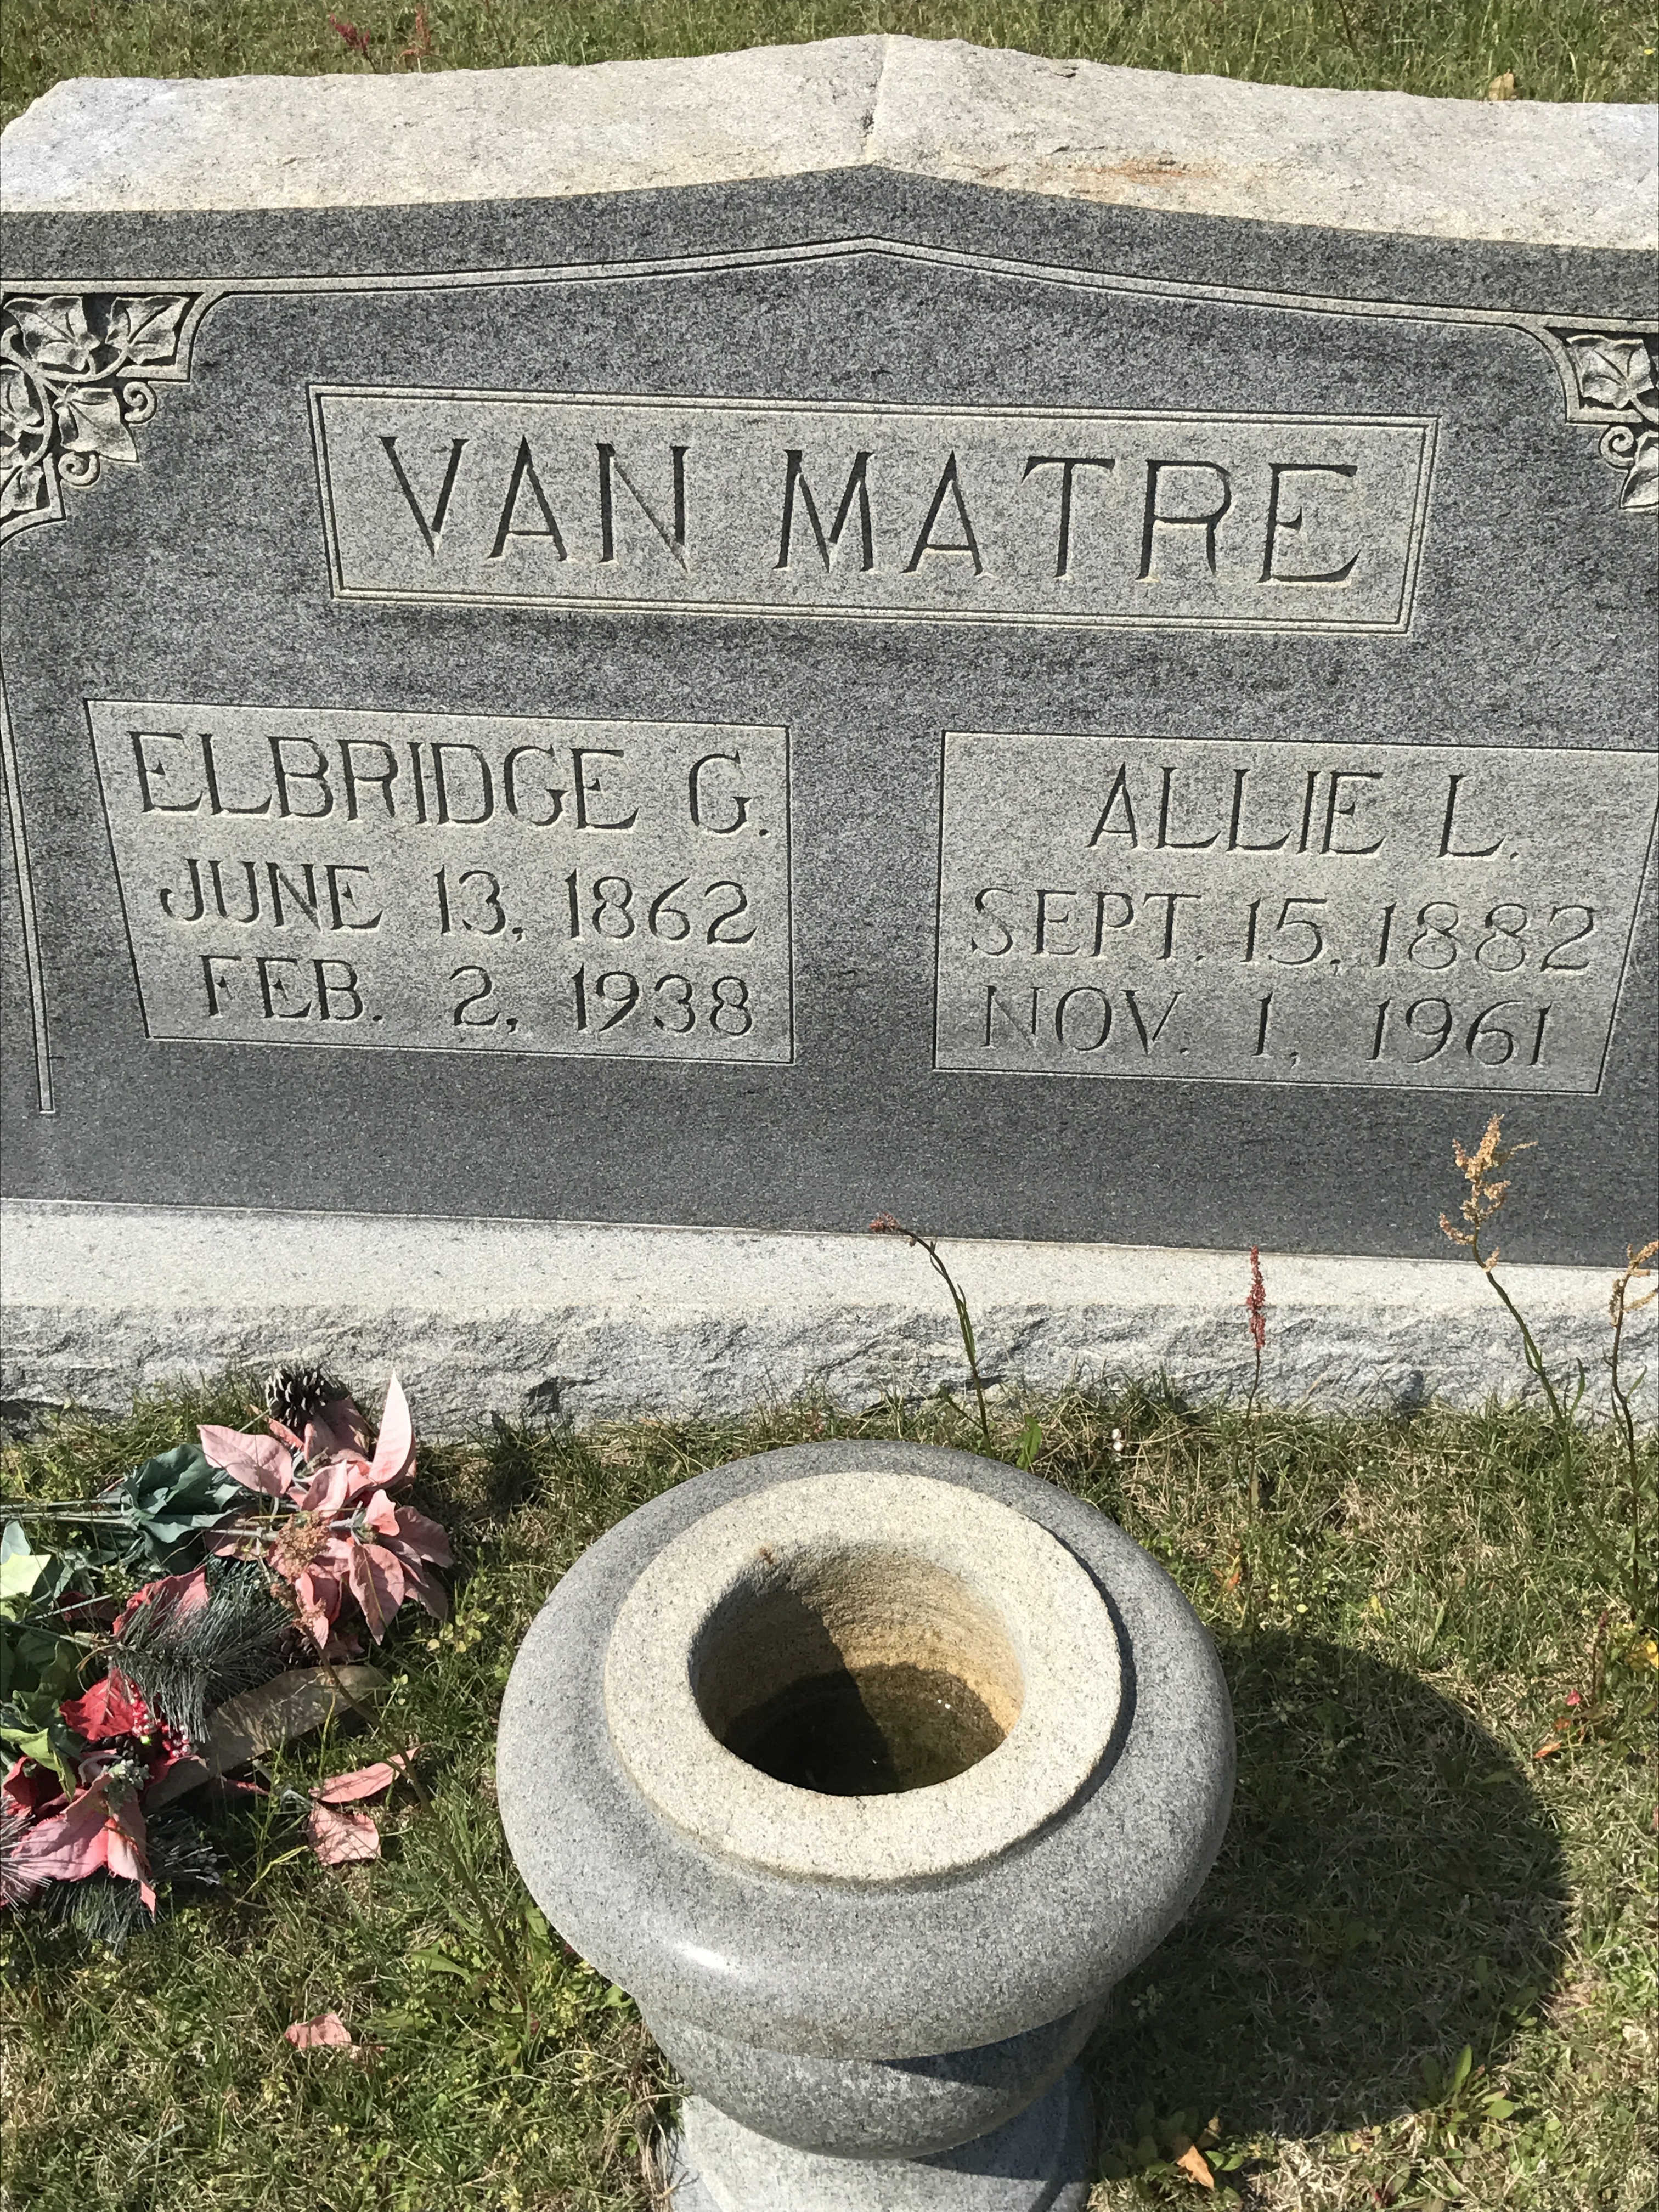 Elbridge G. Van Matre